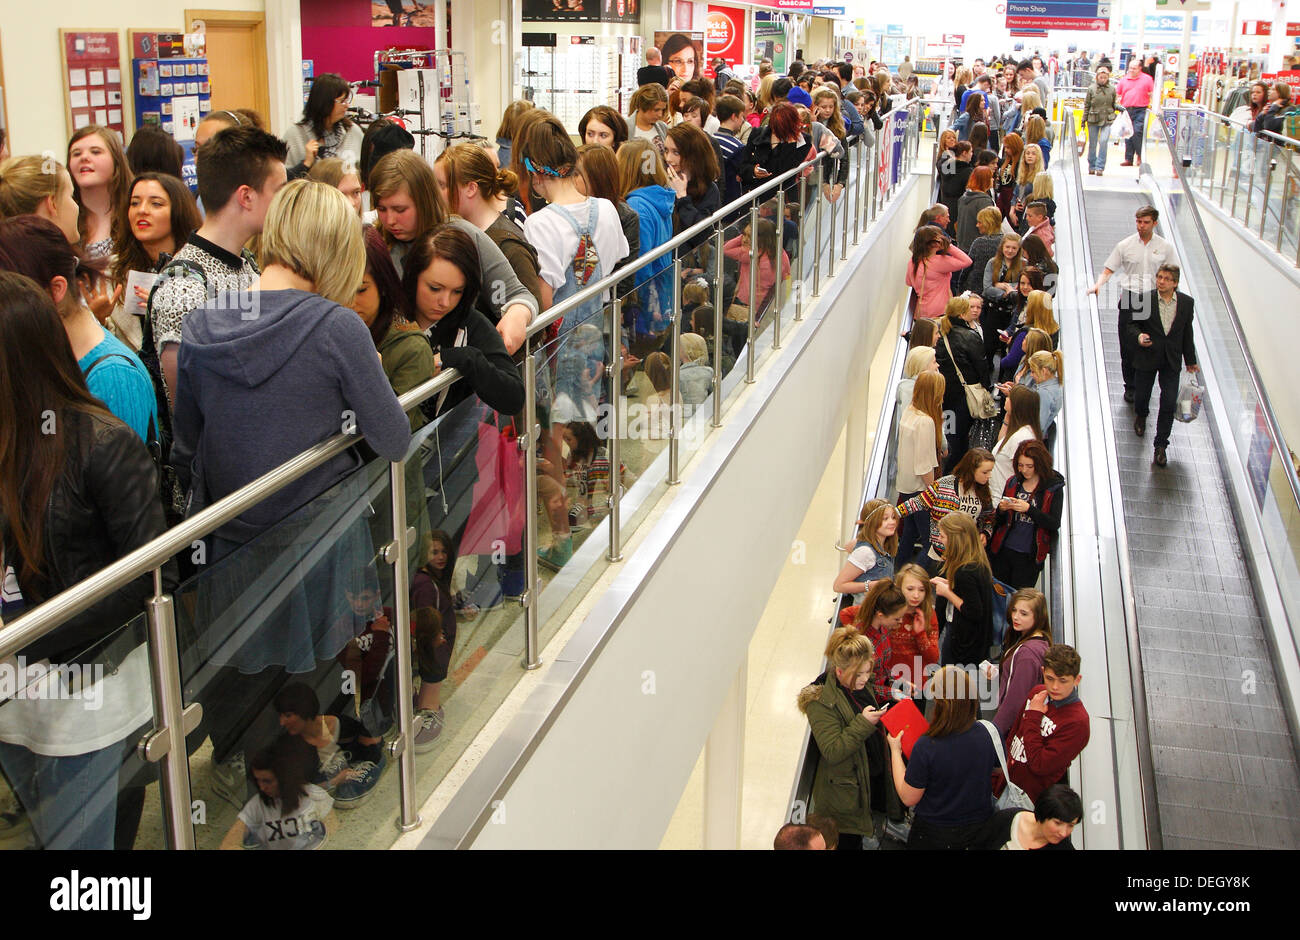 File d'attente des fans de rencontrer la télé-réalité star Joey Essex dans un supermarché Tesco au cours de sa tournée de promotion, produit cheveux UK Banque D'Images